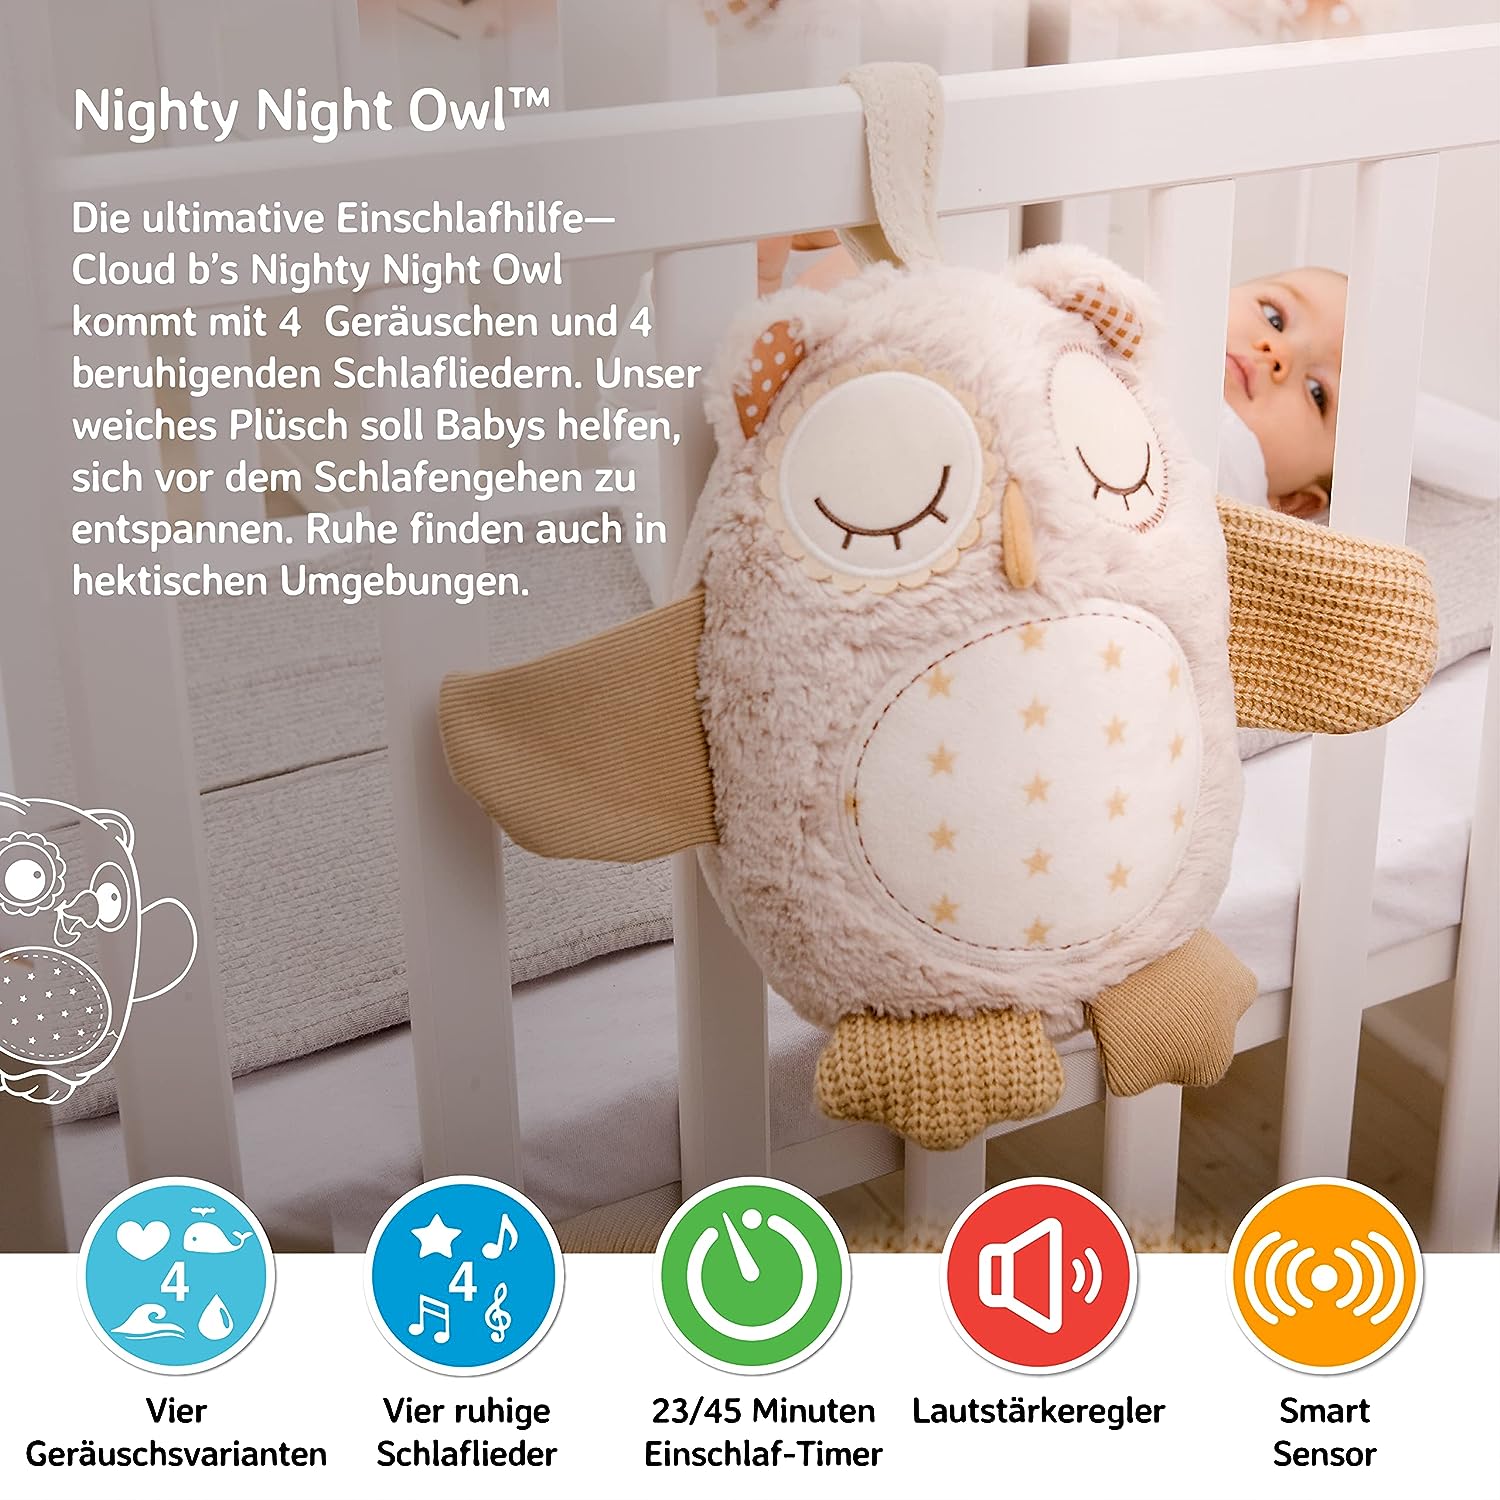 Nighty-Night-Owl-Einschlafhilfe-cloud-b-berlindeluxe-eule-fluegel-box-bett